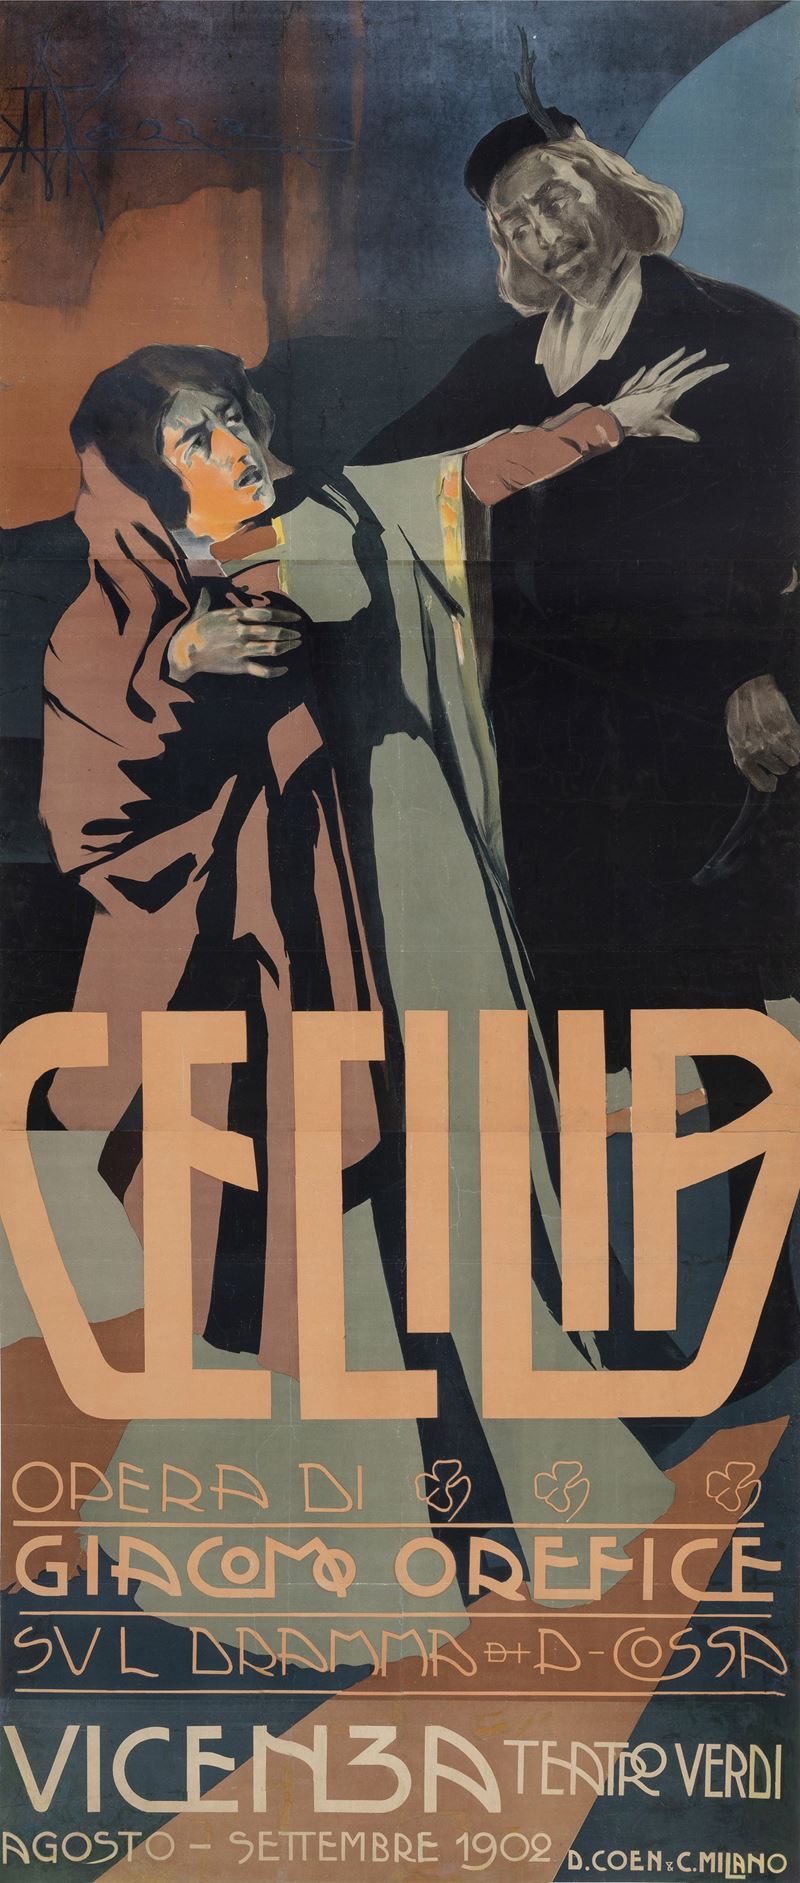 Aldo Mazza : Cecilia, Opera di Giacomo Orefice - Vicenza Teatro Verdi  - Auction Vintage Posters - Cambi Casa d'Aste